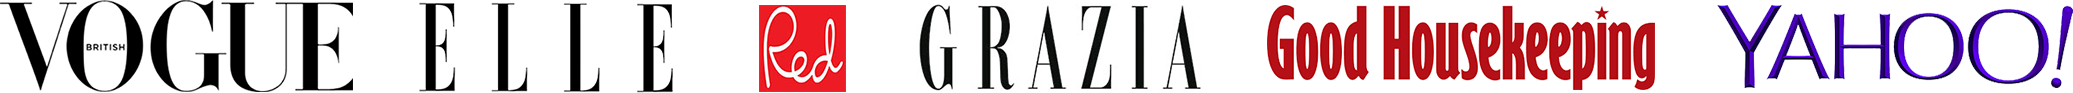 logo-strip